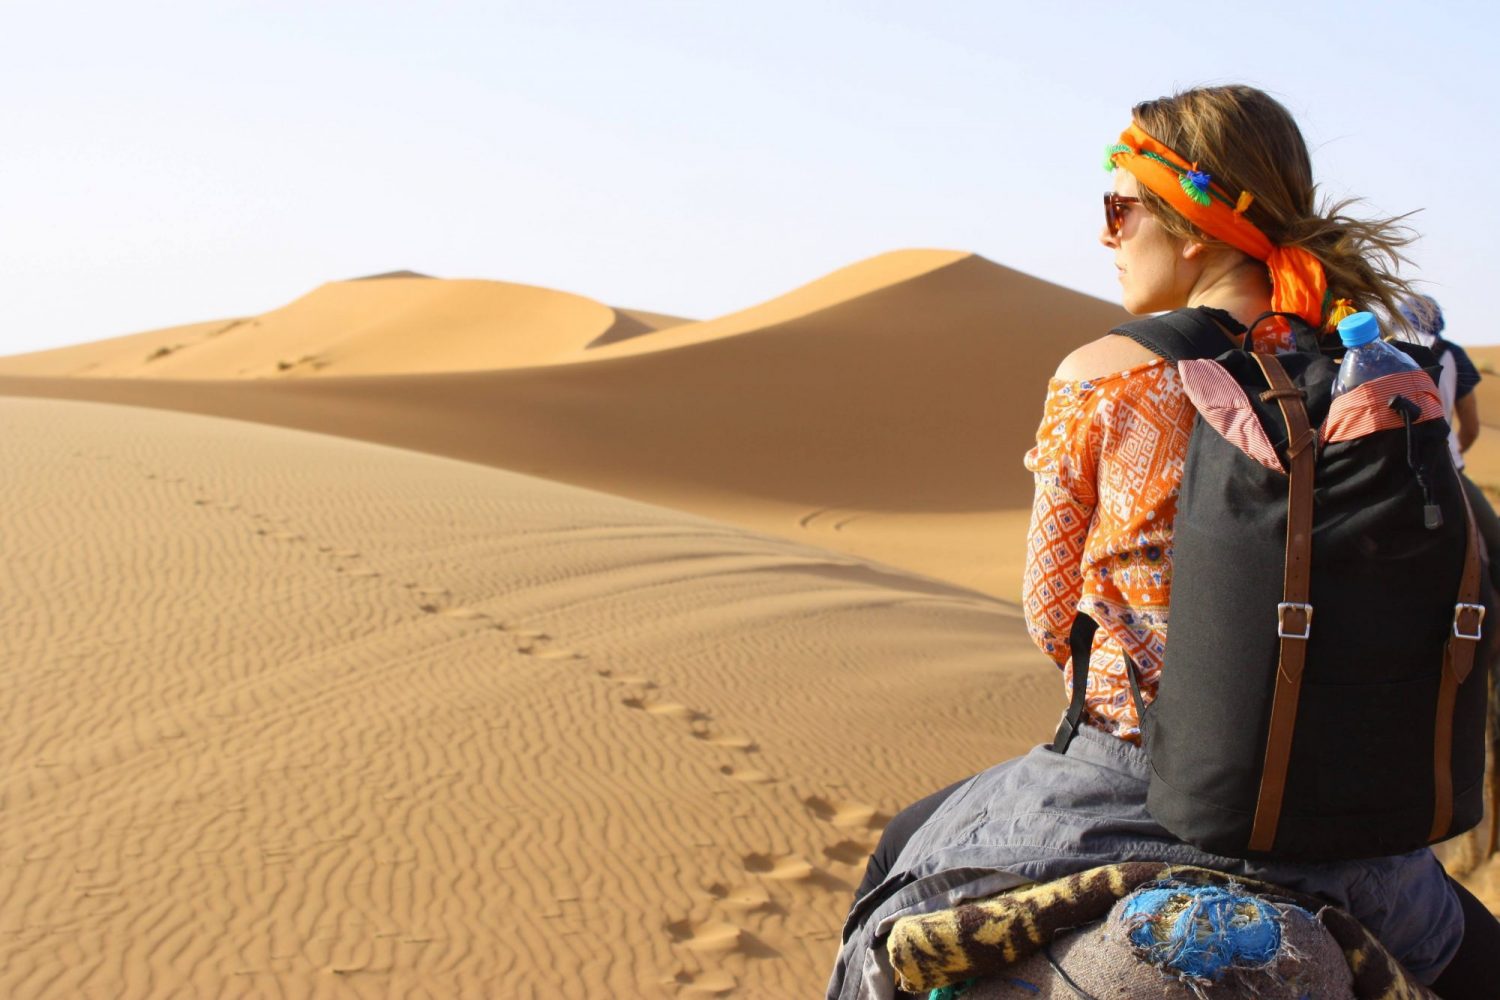 sahara desert backpack camel dunes